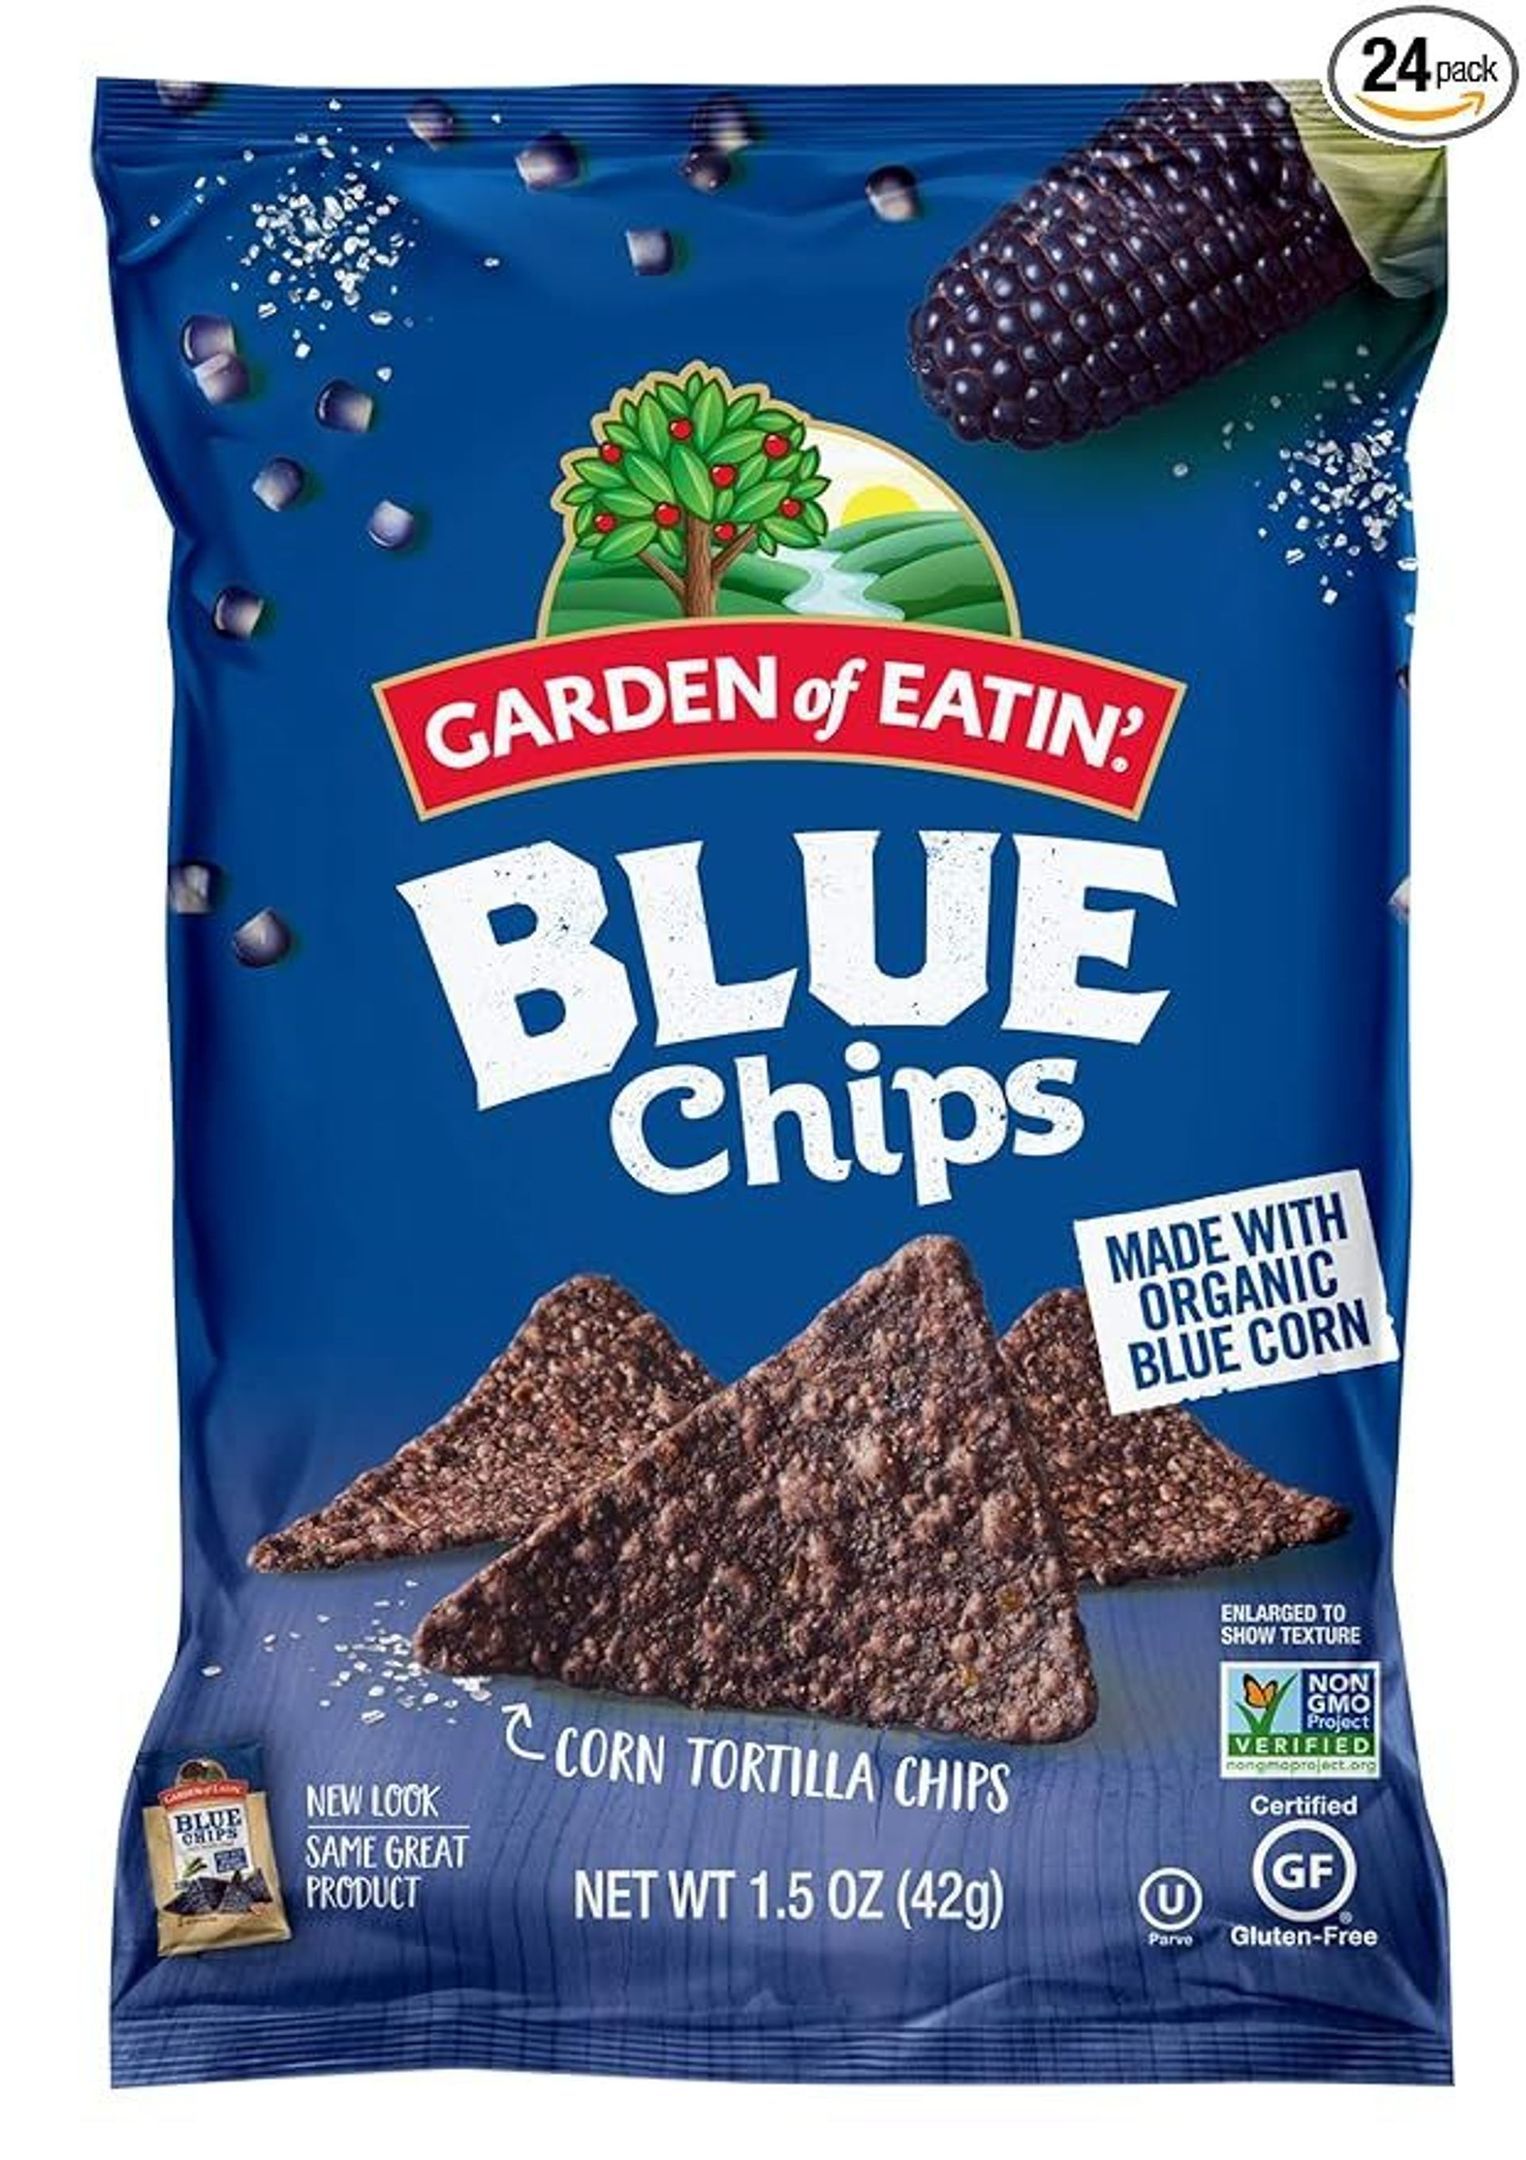 Blue Corn Tortilla Chips